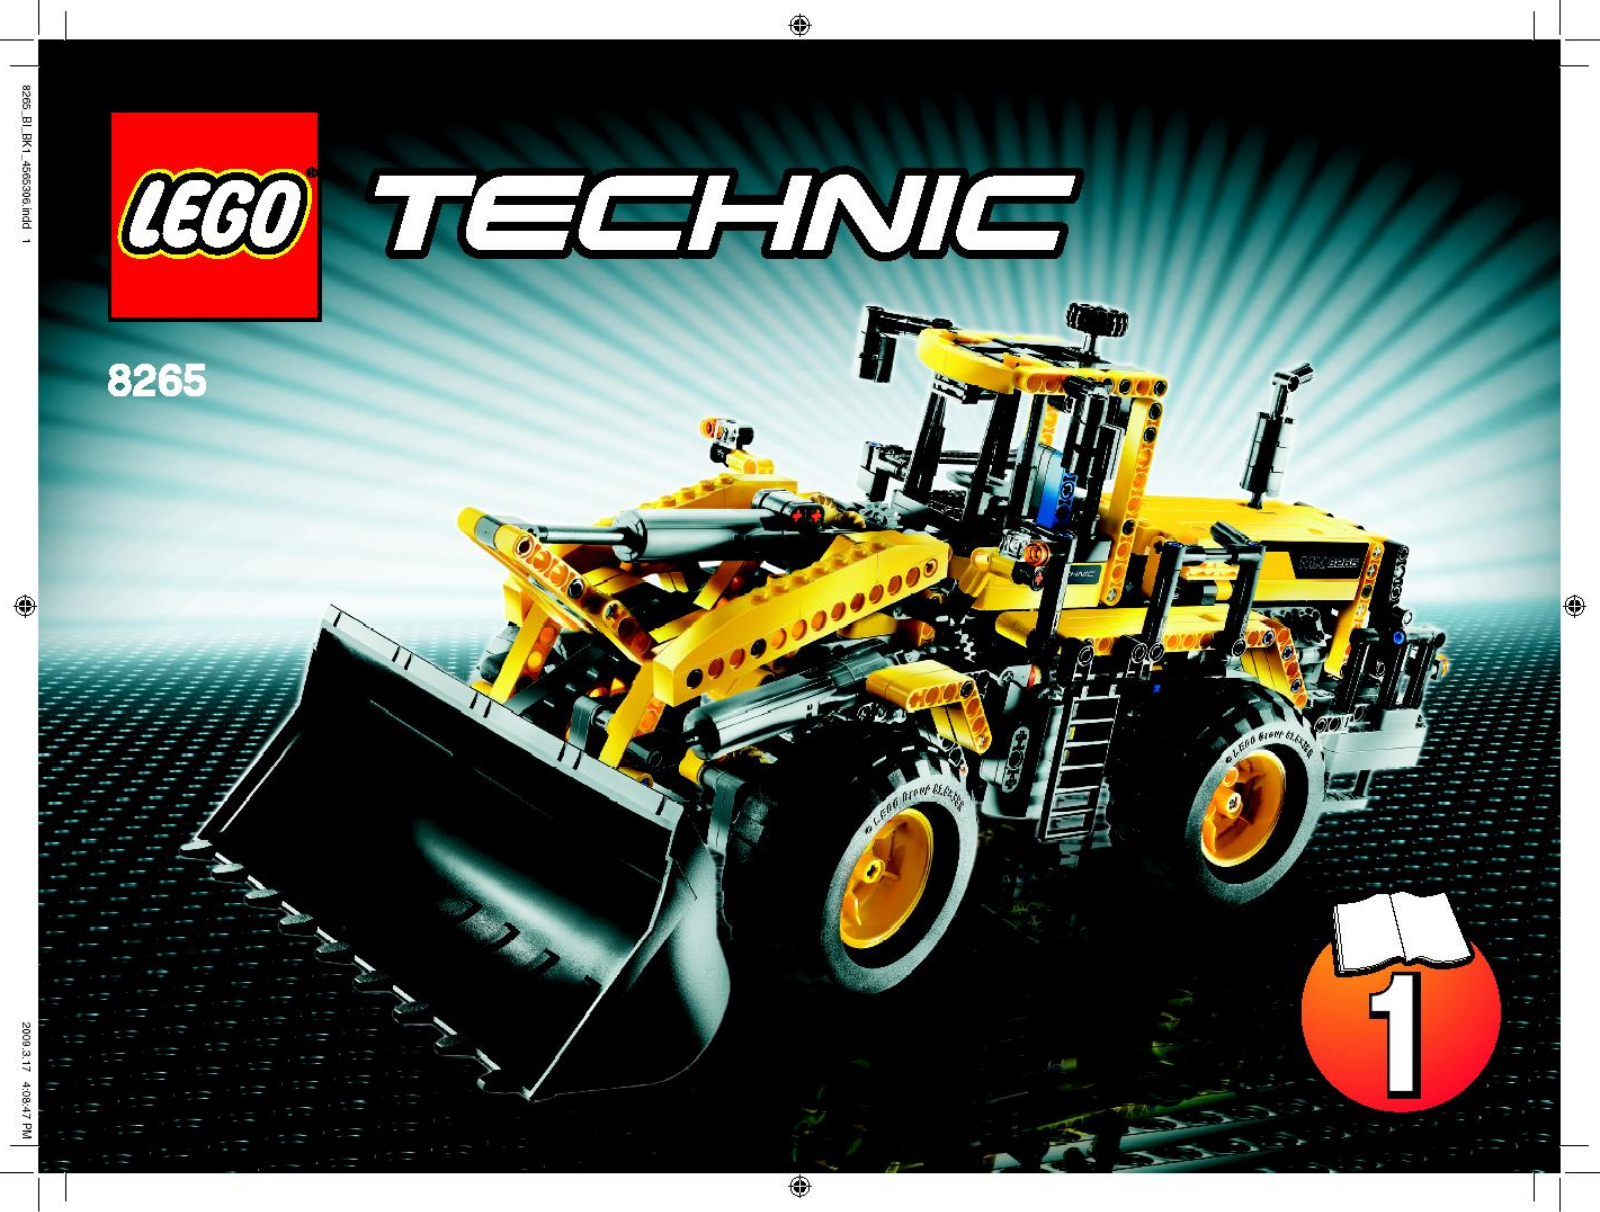 LEGO 8265 Instructions